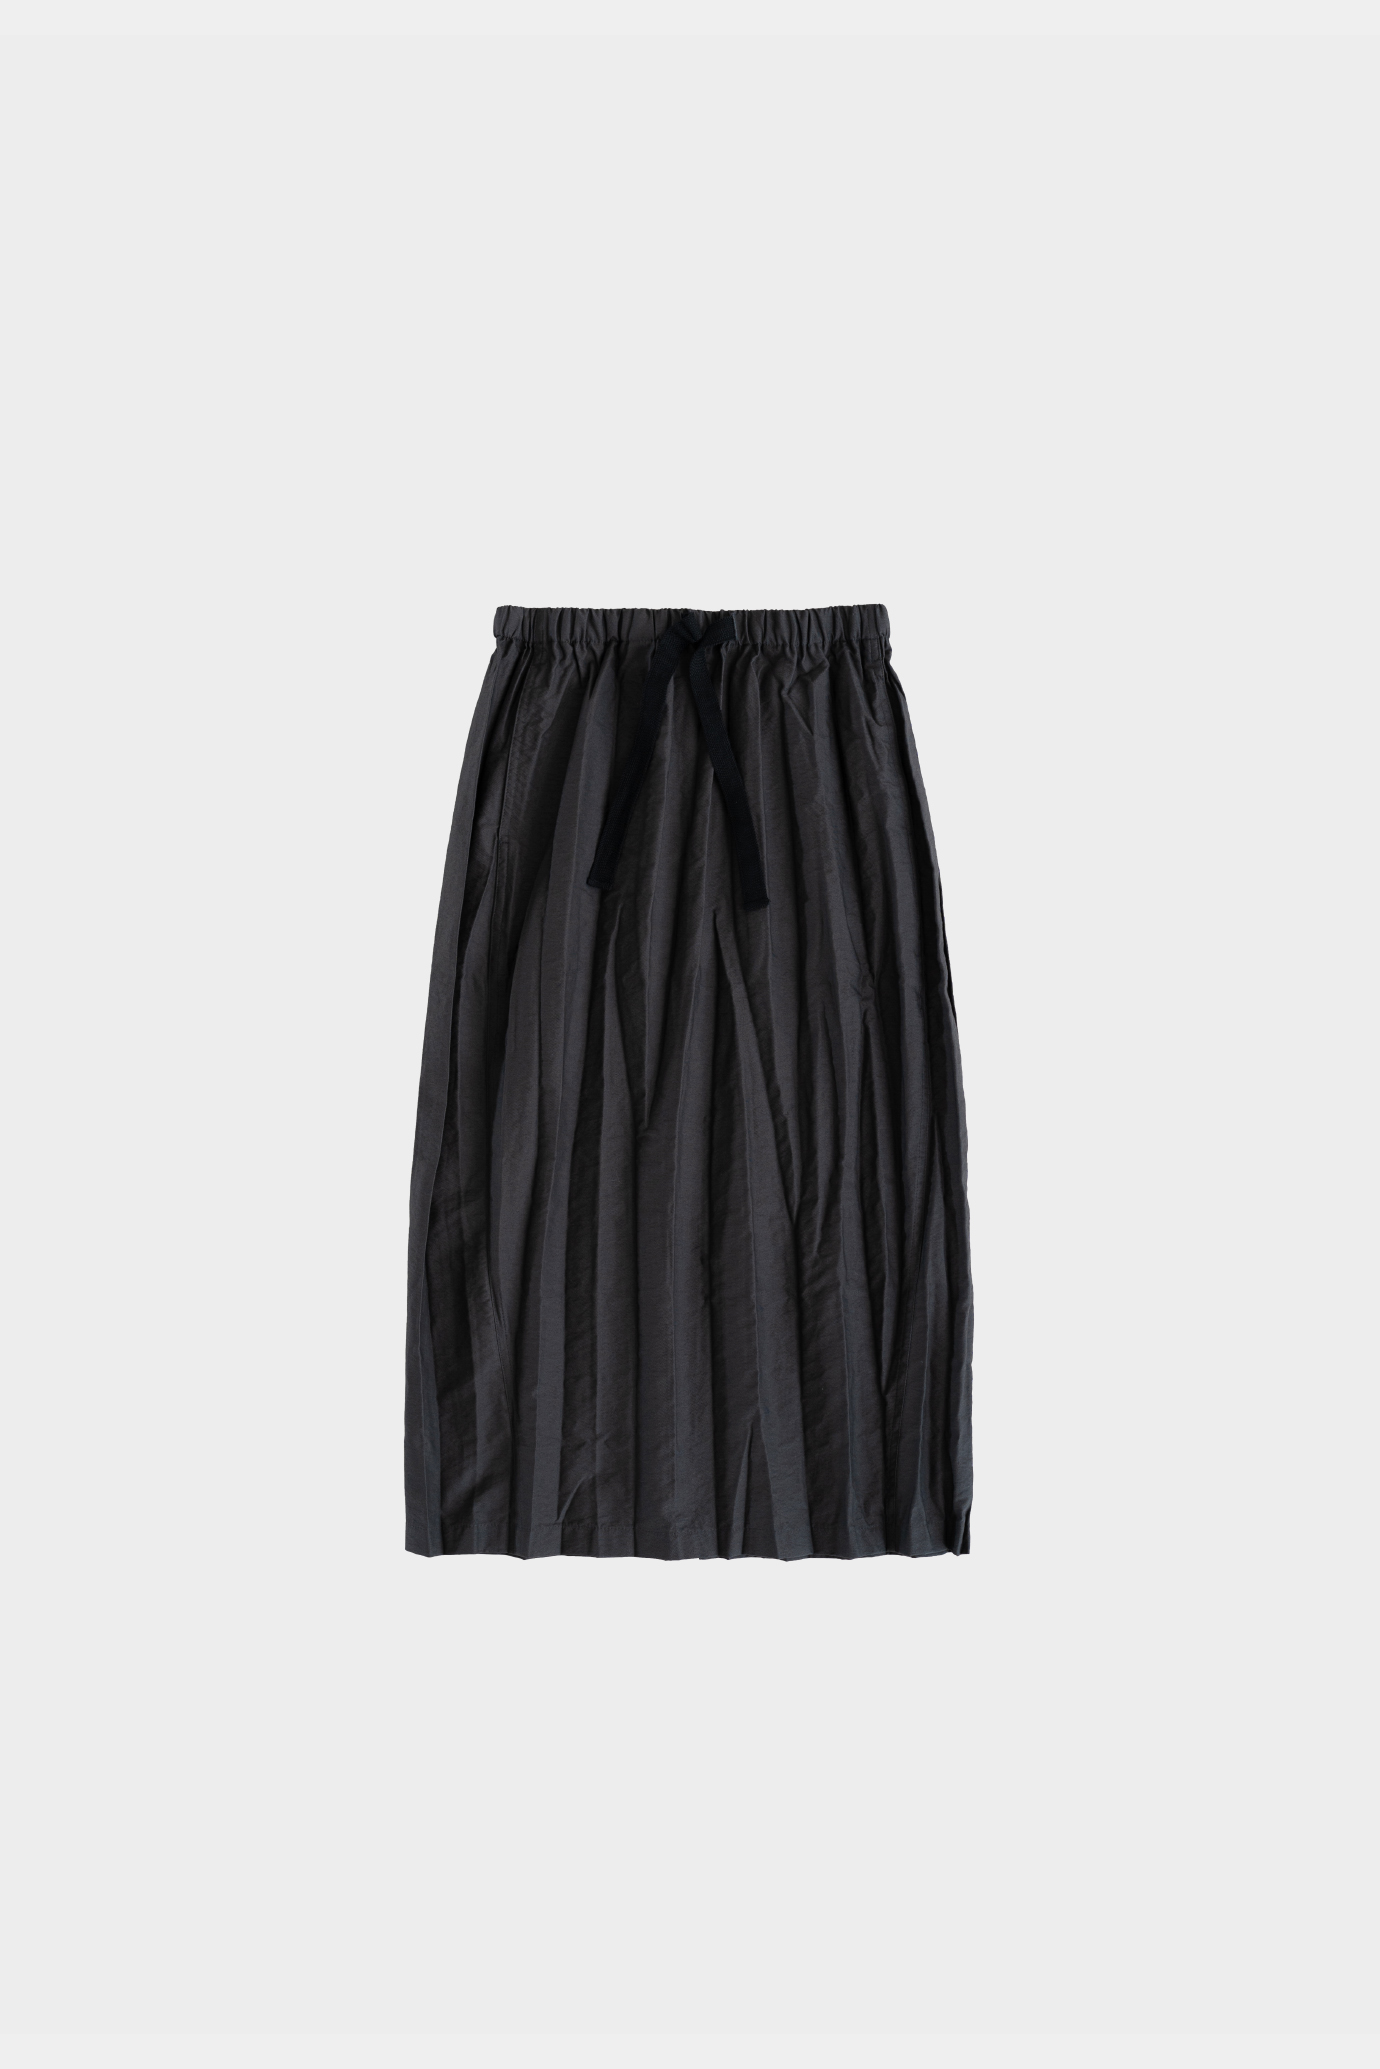 18239_Charcoal Evening skirt